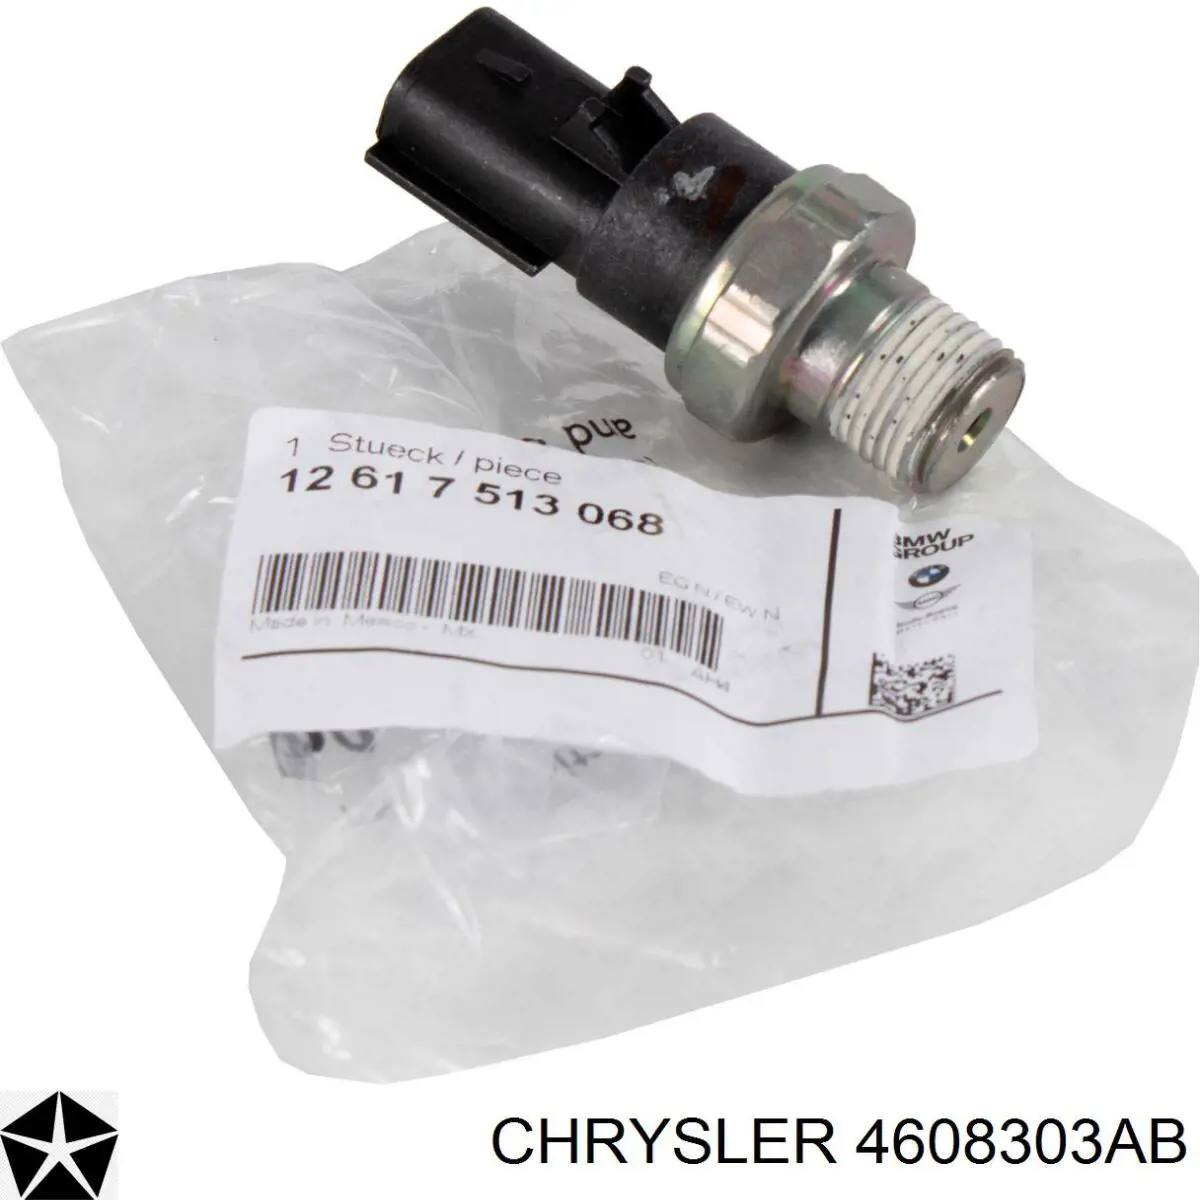 4608303AB Chrysler датчик давления масла